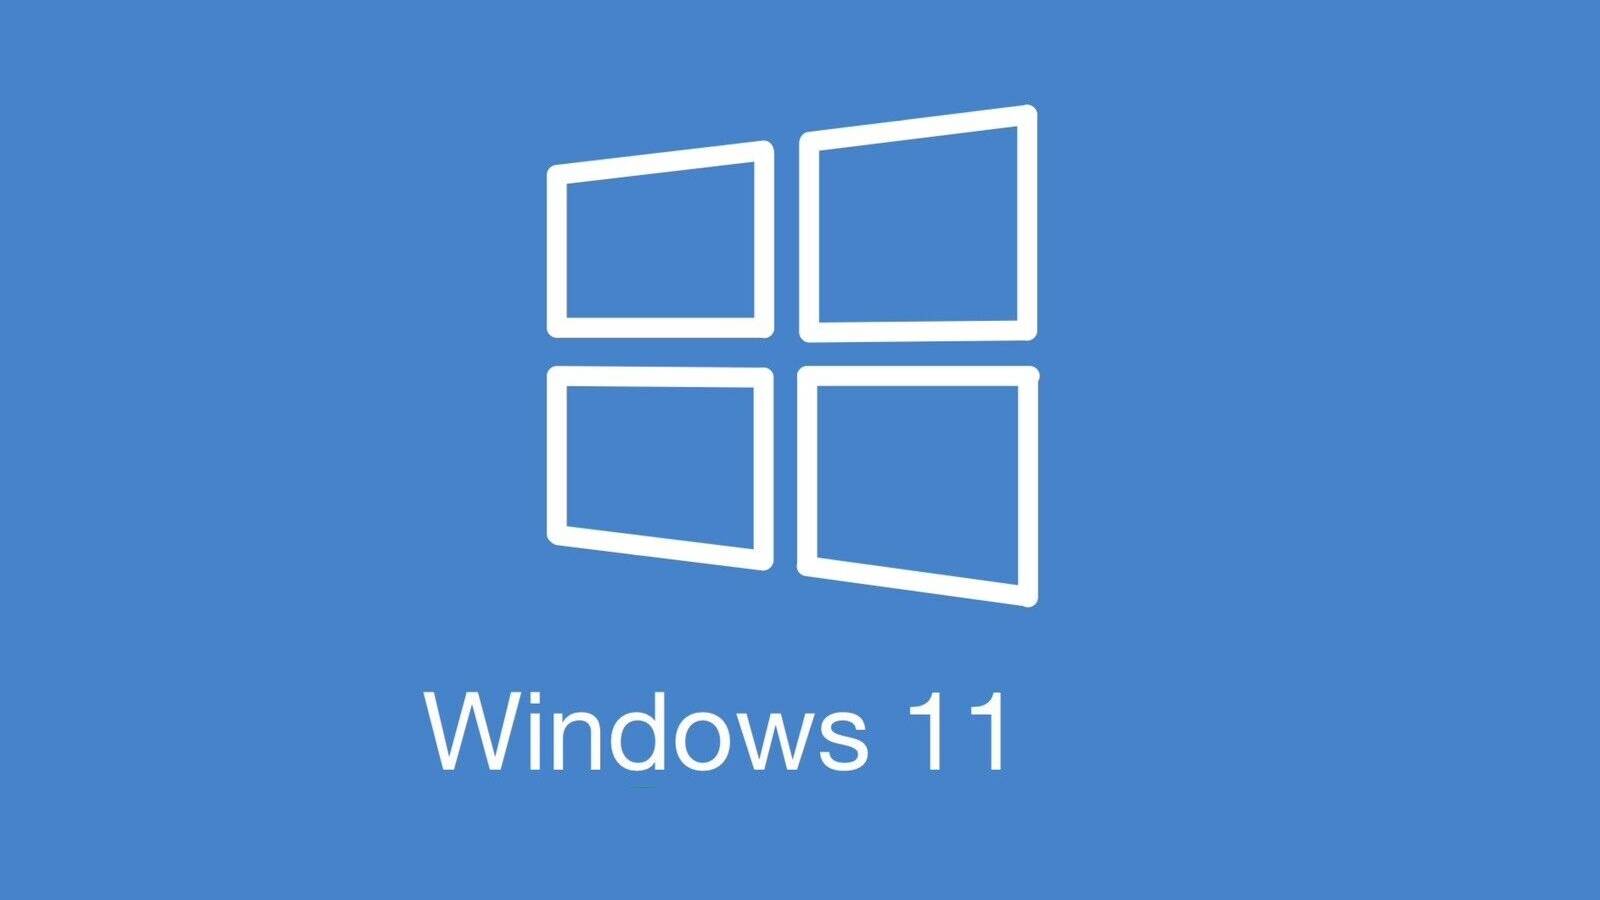 Microsoft Continua Schimbarile Windows 11 Actualizarea Vesti Majore